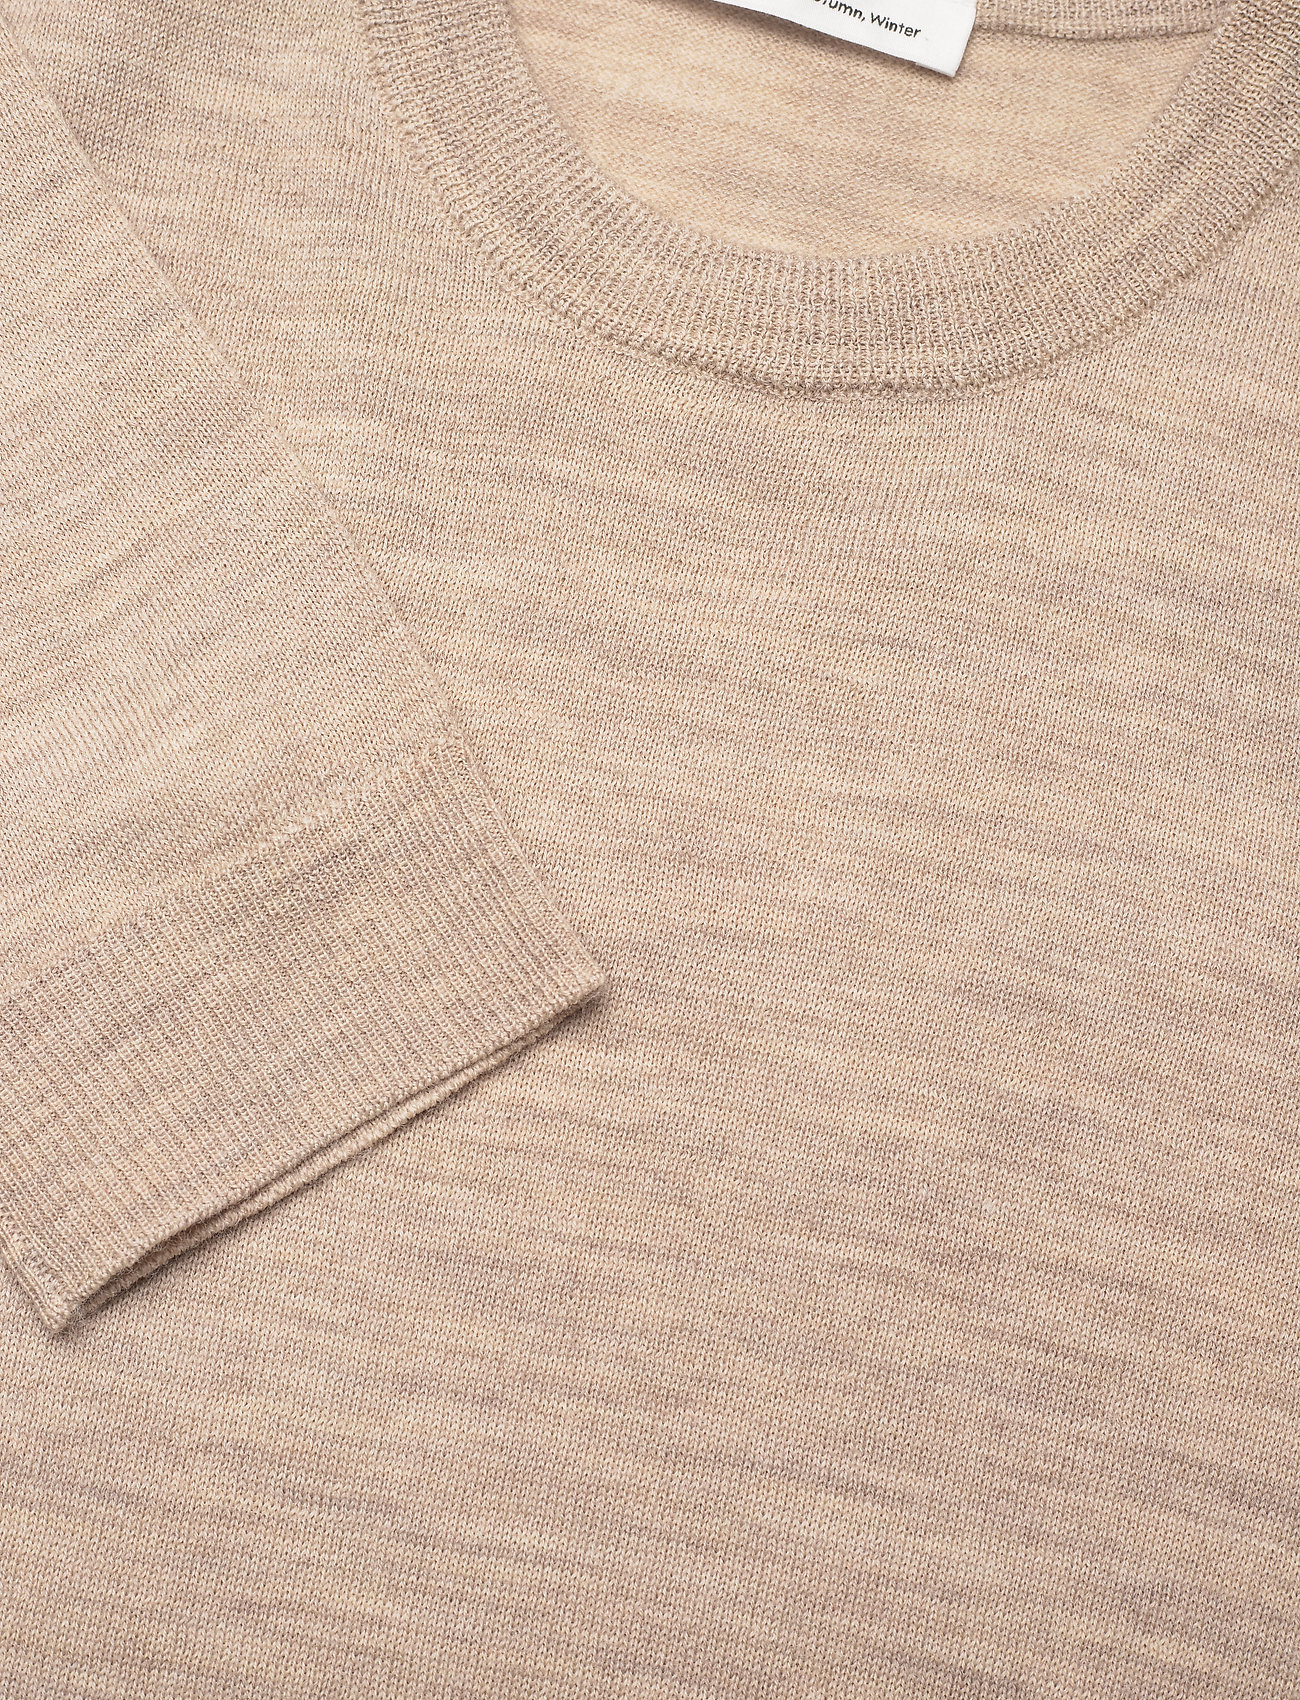 Wood Wood - Beckett classic merino jumper - podstawowe koszulki - light sand - 2